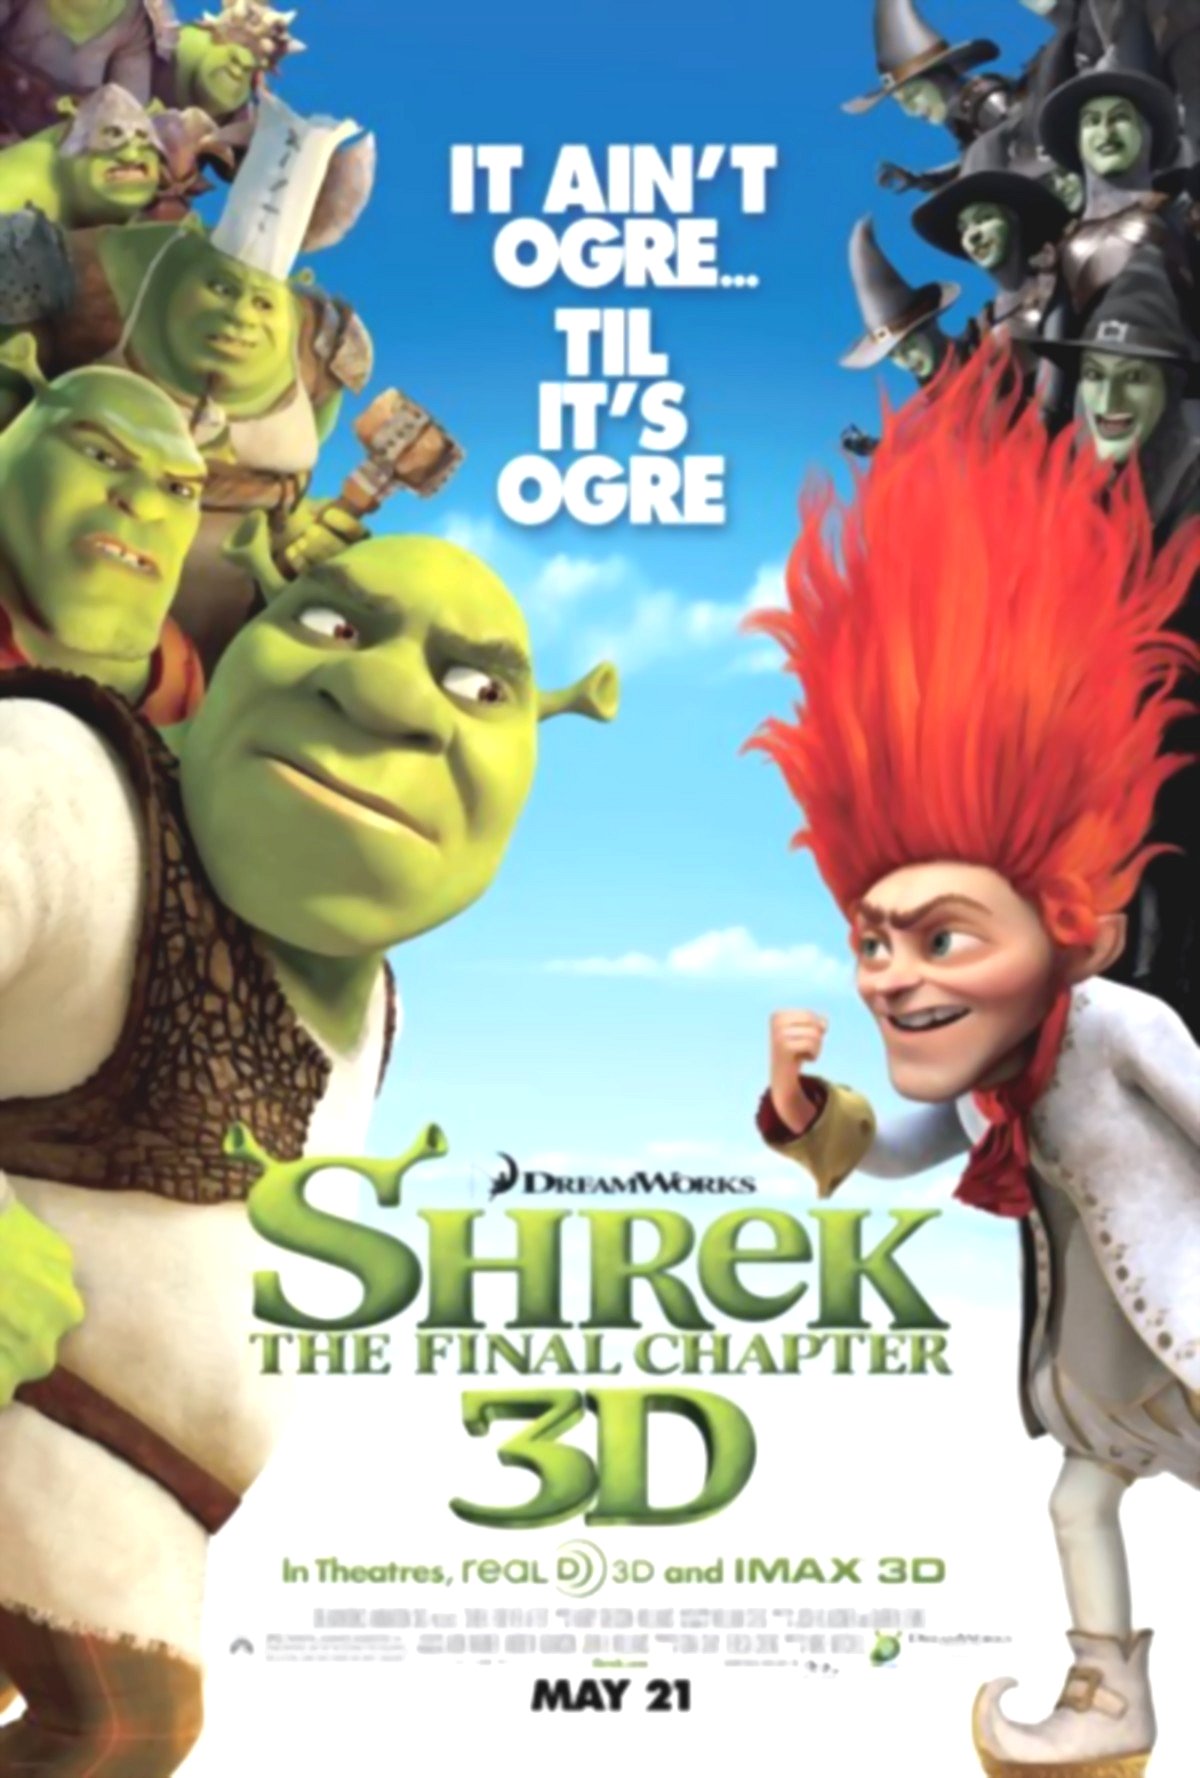 Shrek: The Final Chapter or Shrek Forever After Google image from http://i22.lulzimg.com/i/cf0273.jpg